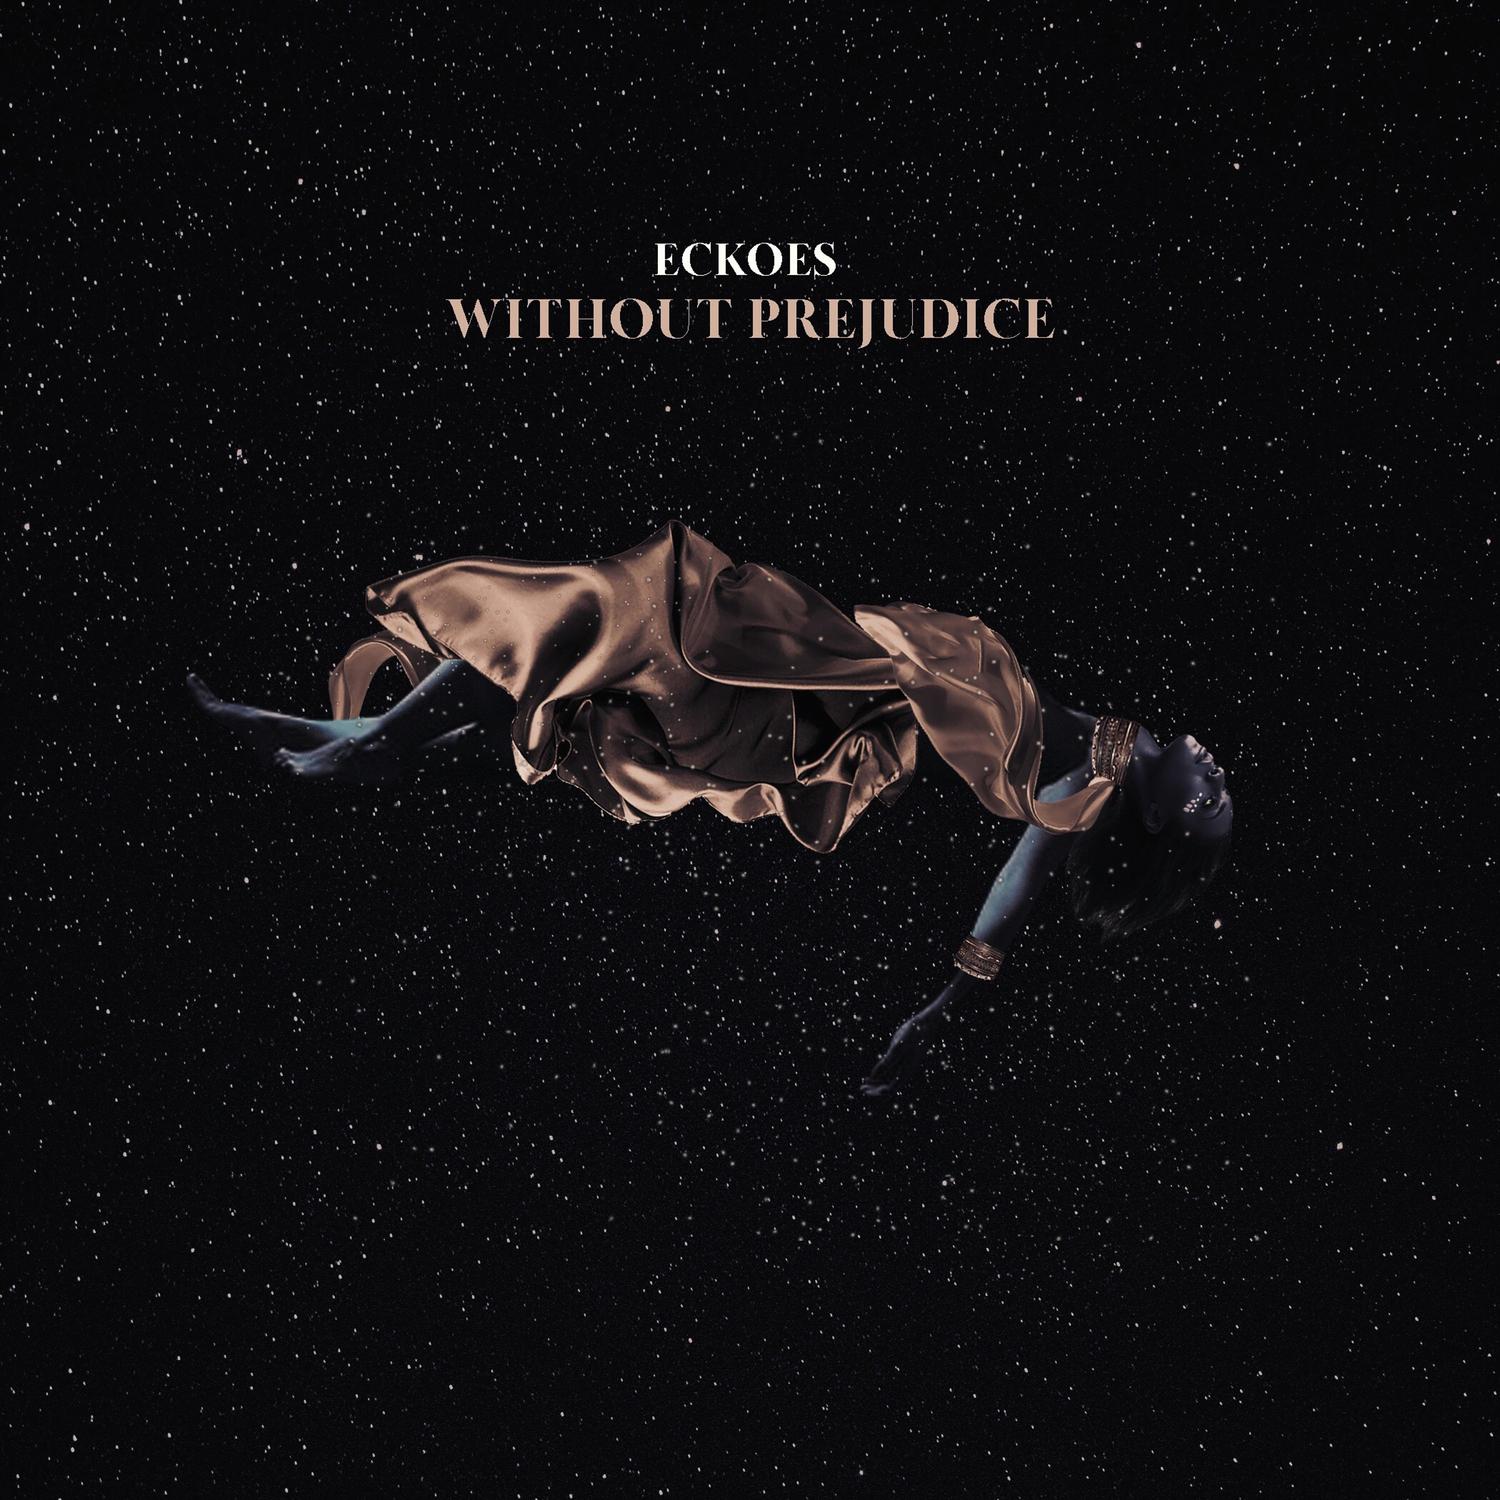 Eckoes - Without Prejudice